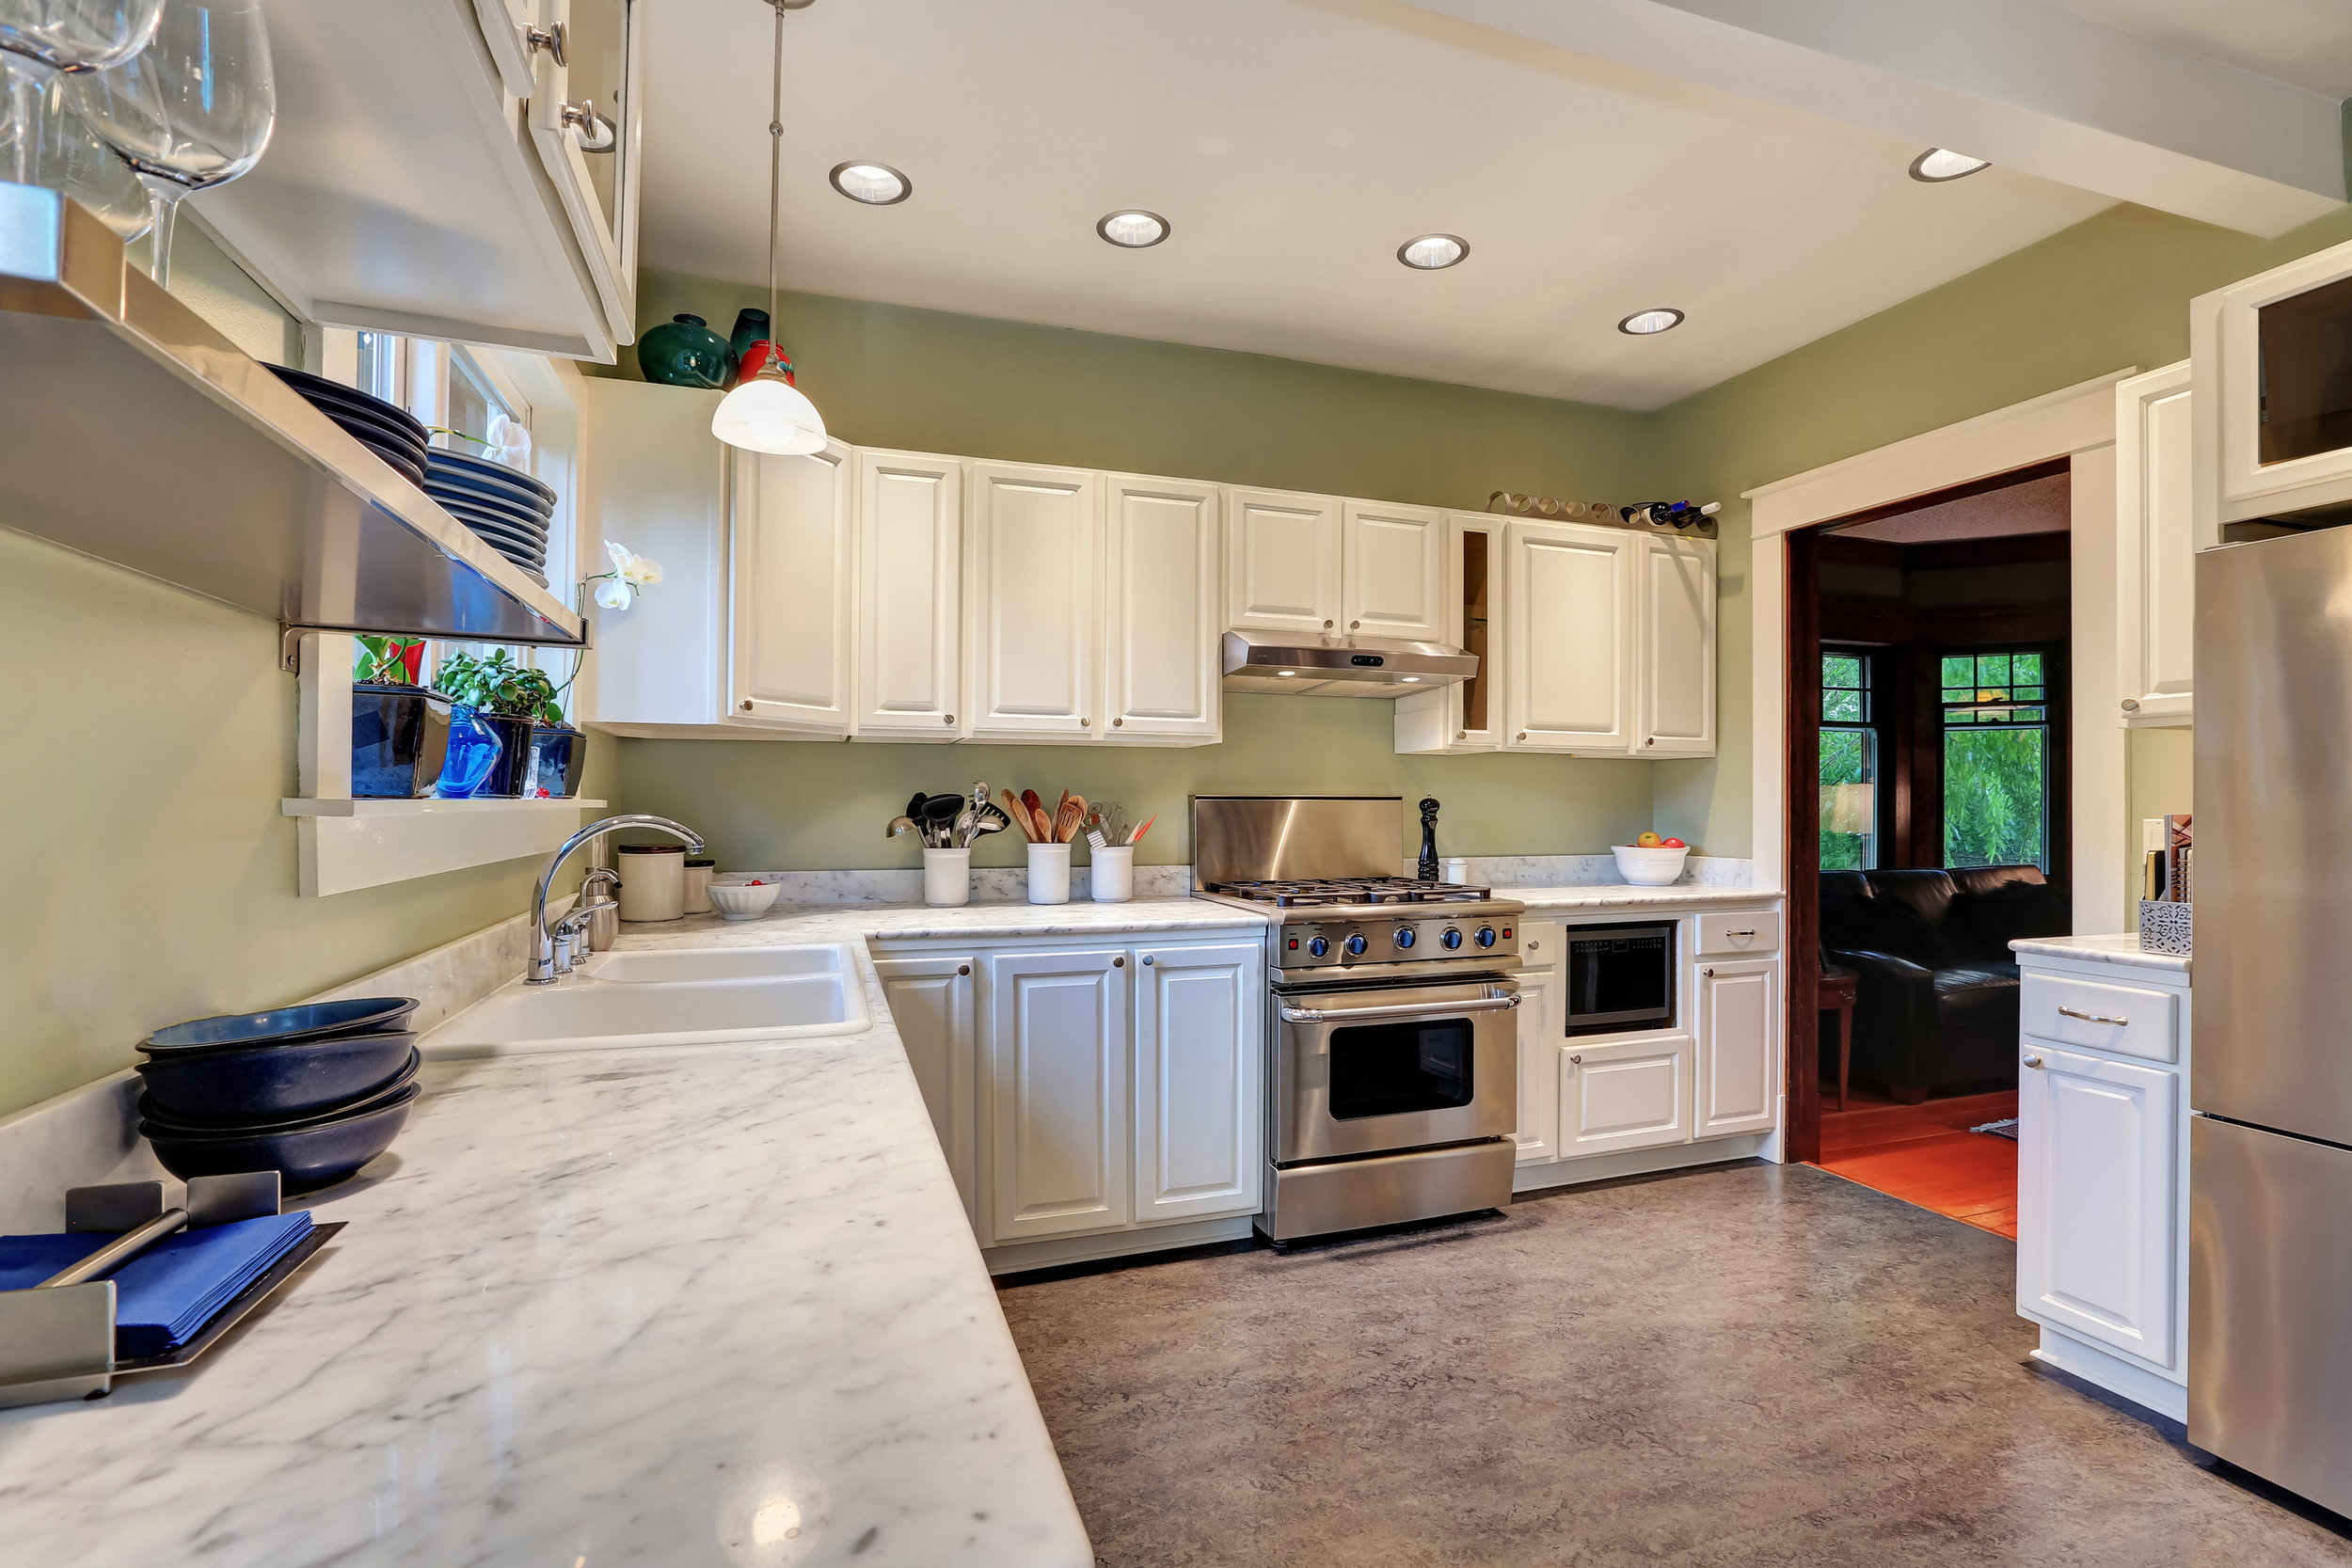 bigstock-Bright-Kitchen-Interior-With-W-143744543.jpg